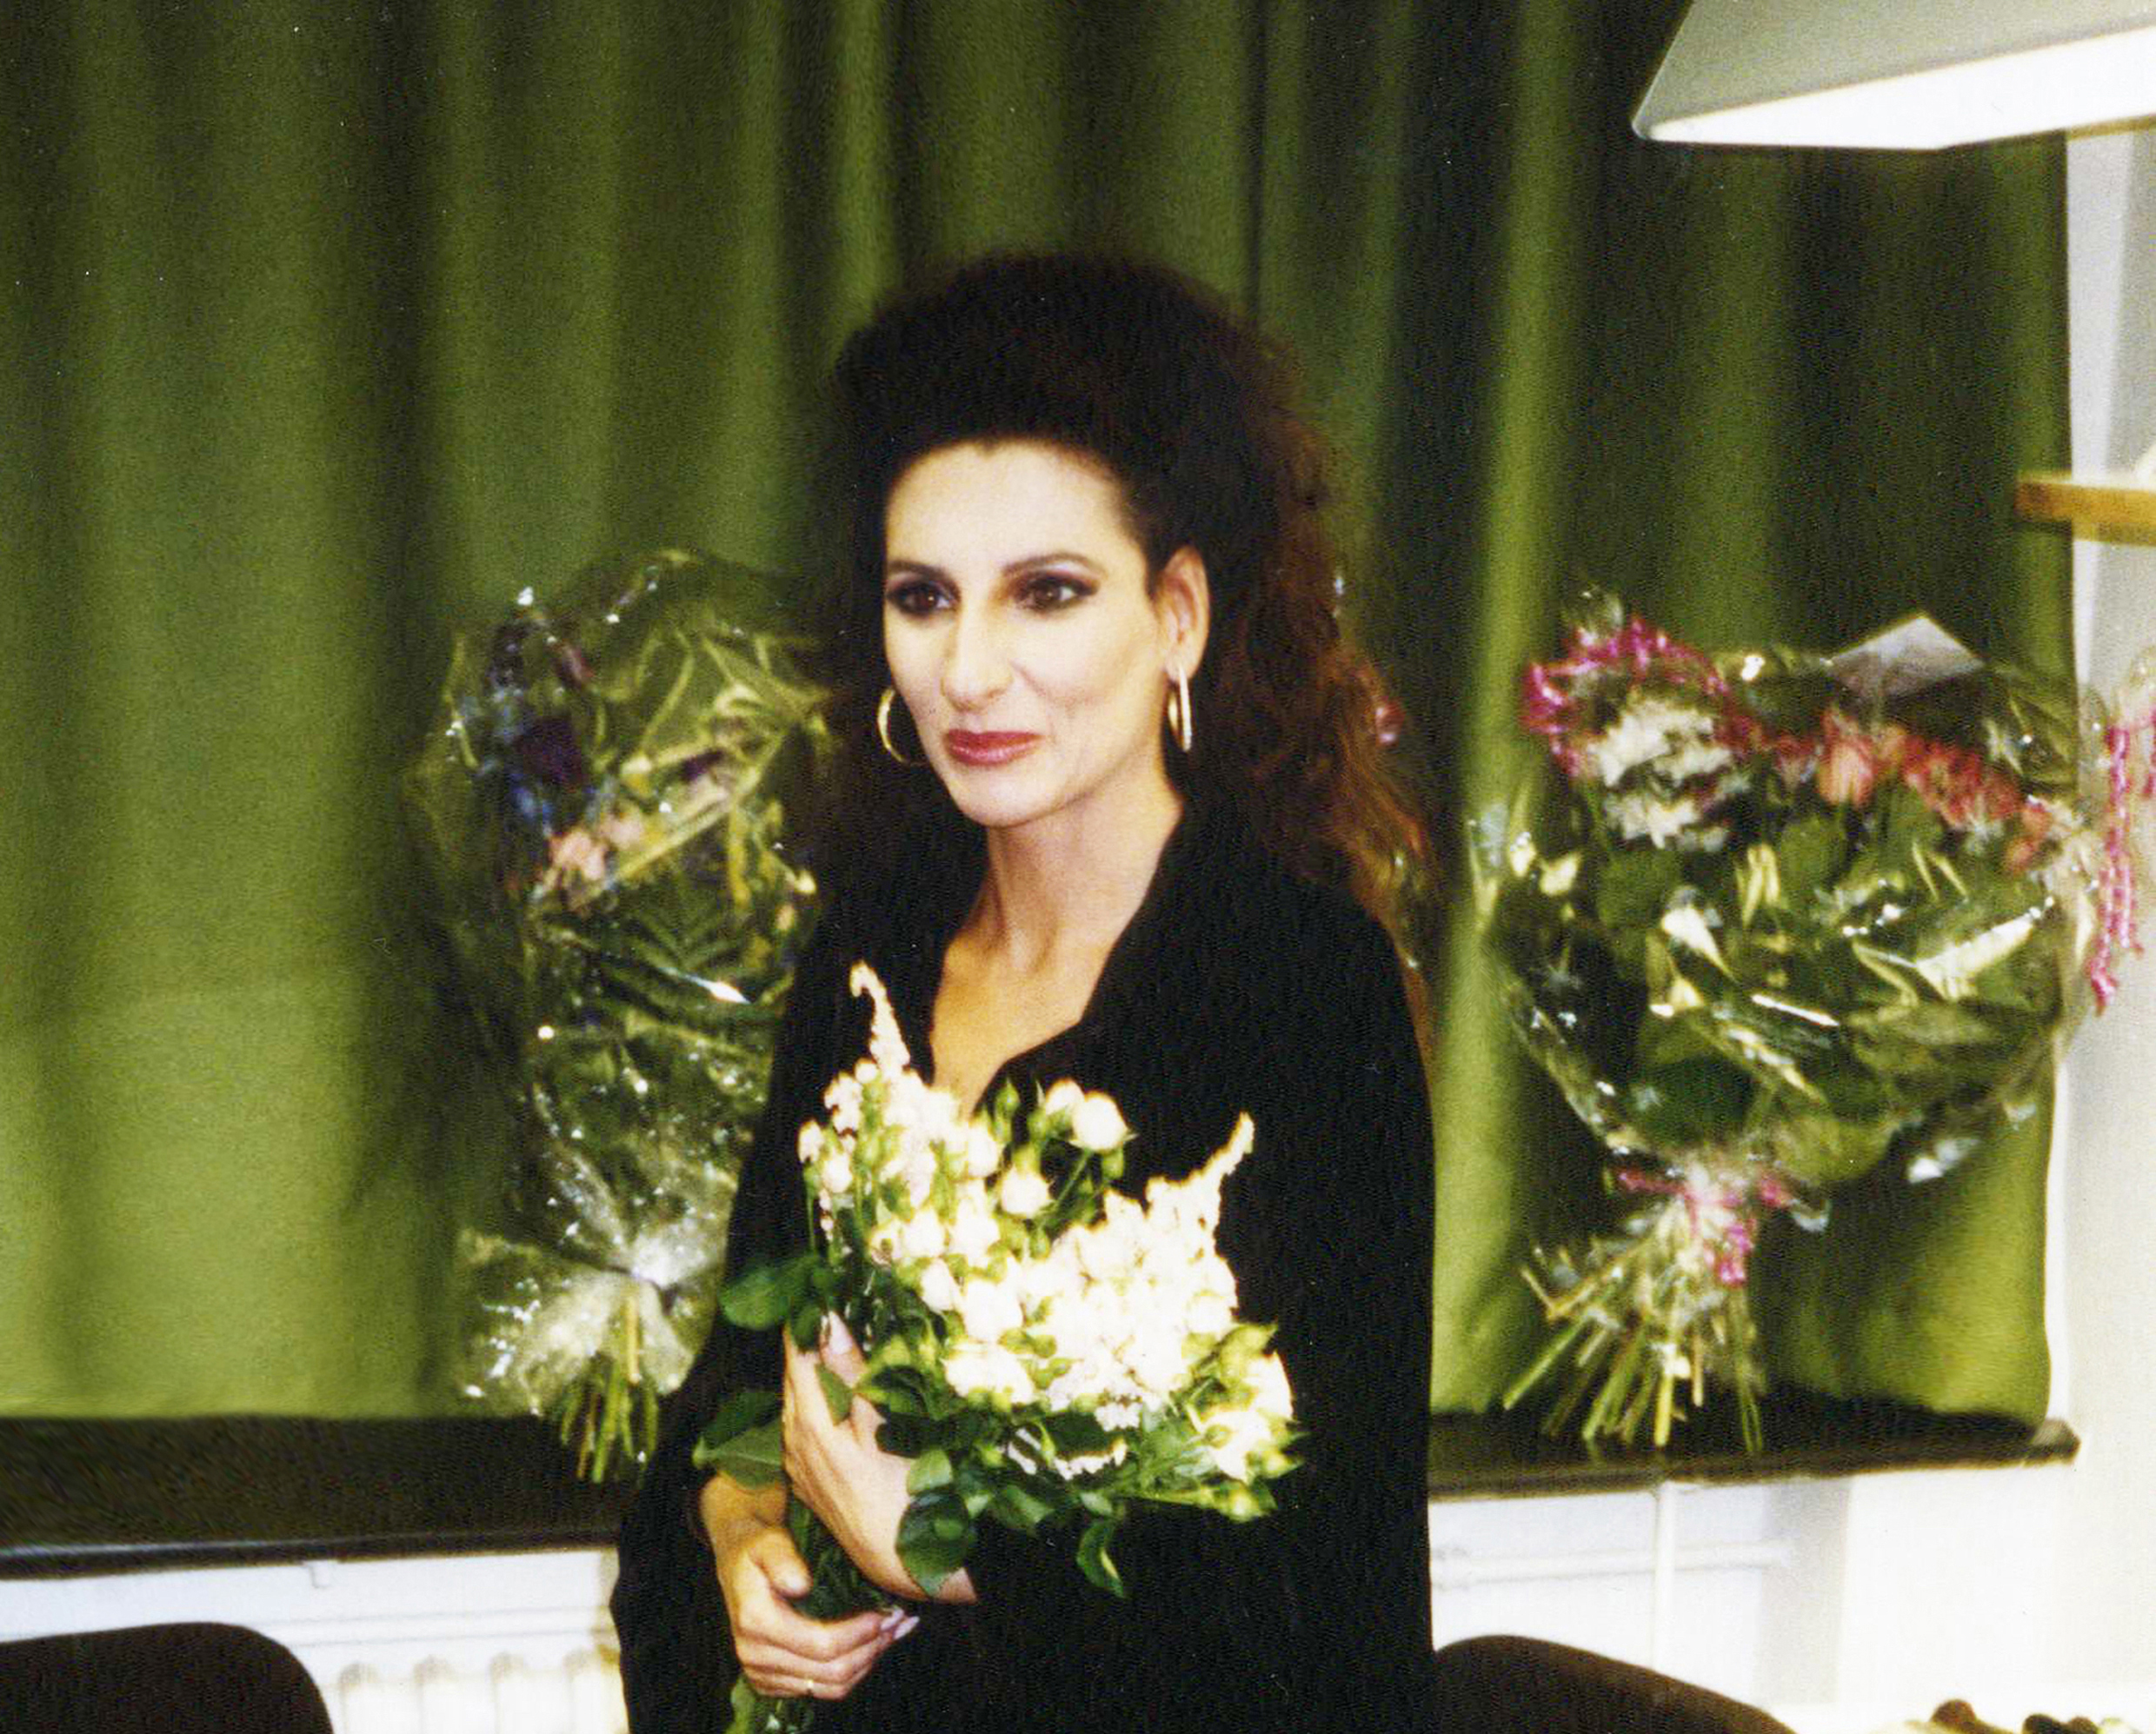 Lucia Aliberti⚘Deutsche Oper Berlin⚘Berlin⚘Opera⚘Lucia di Lammermoor⚘Autograph Session⚘Dressing Room⚘Makeup Session⚘:http://www.luciaaliberti.it #luciaaliberti #deutscheoperberlin #berlin #autographsession #opera #luciadilammermoor #dressingroom #makeupsession